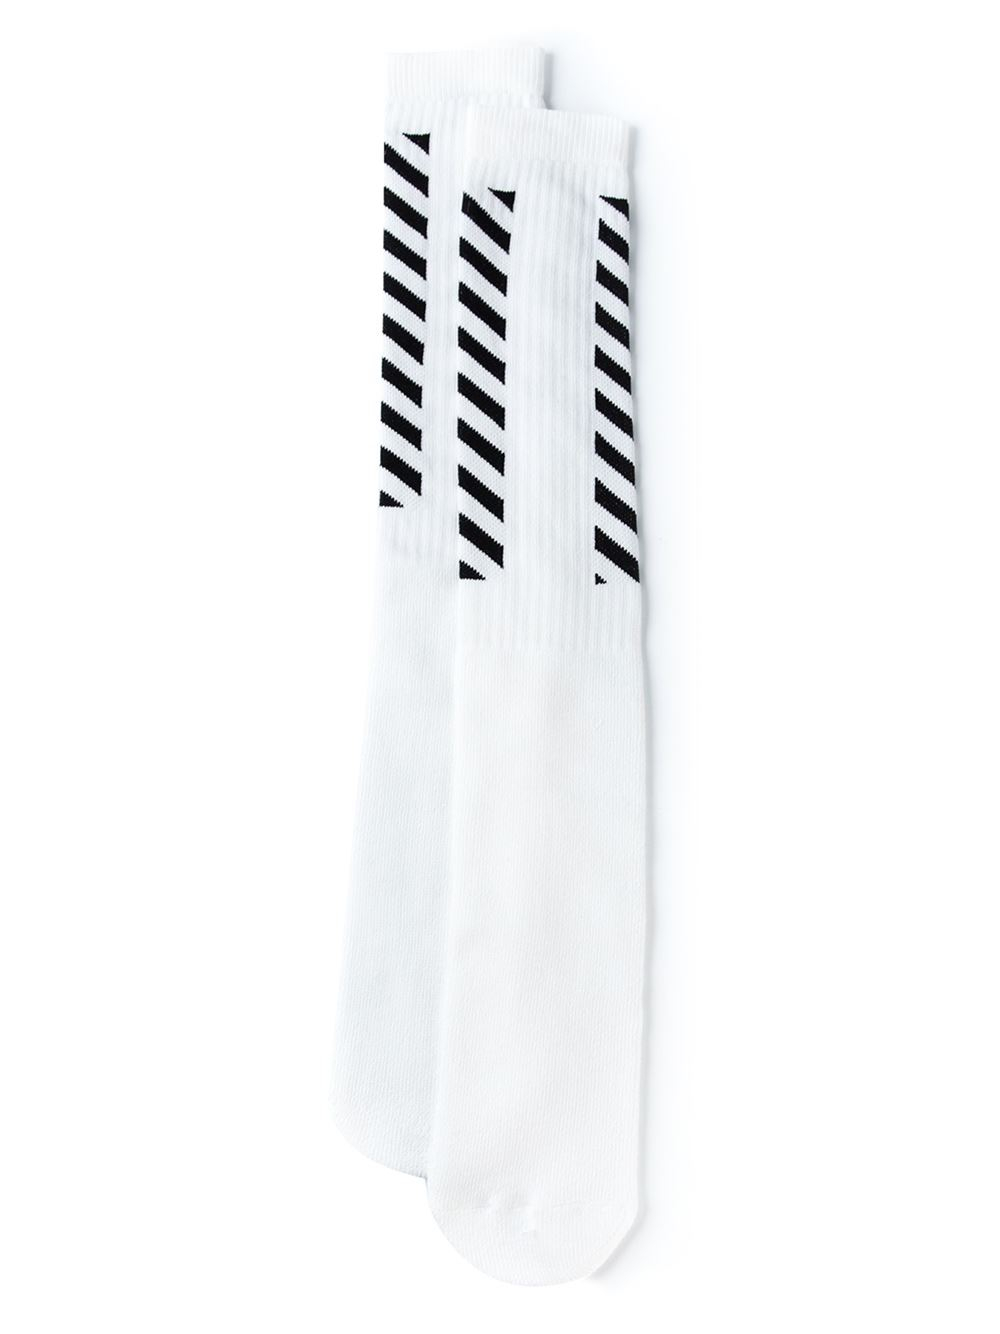 Off-White c/o Virgil Abloh Diagonal Striped Socks in Black for Men - Lyst